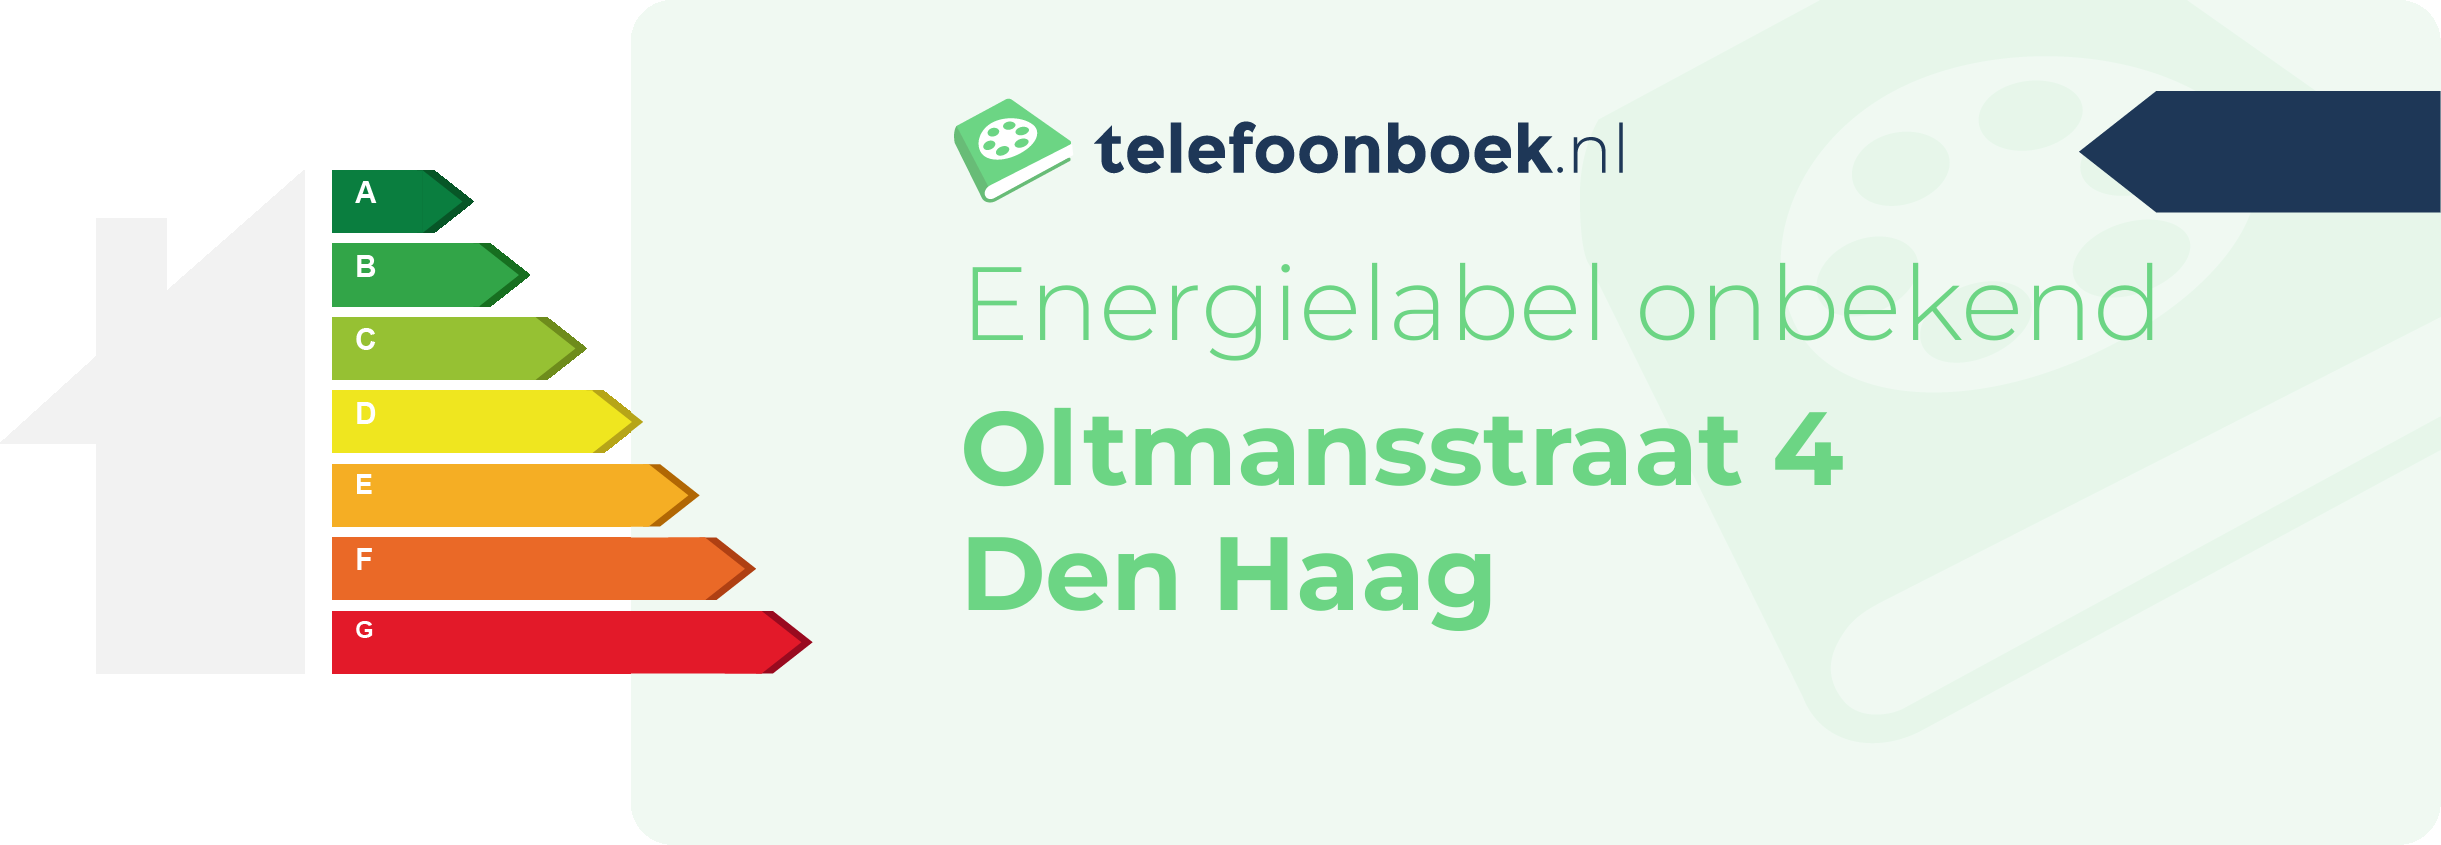 Energielabel Oltmansstraat 4 Den Haag